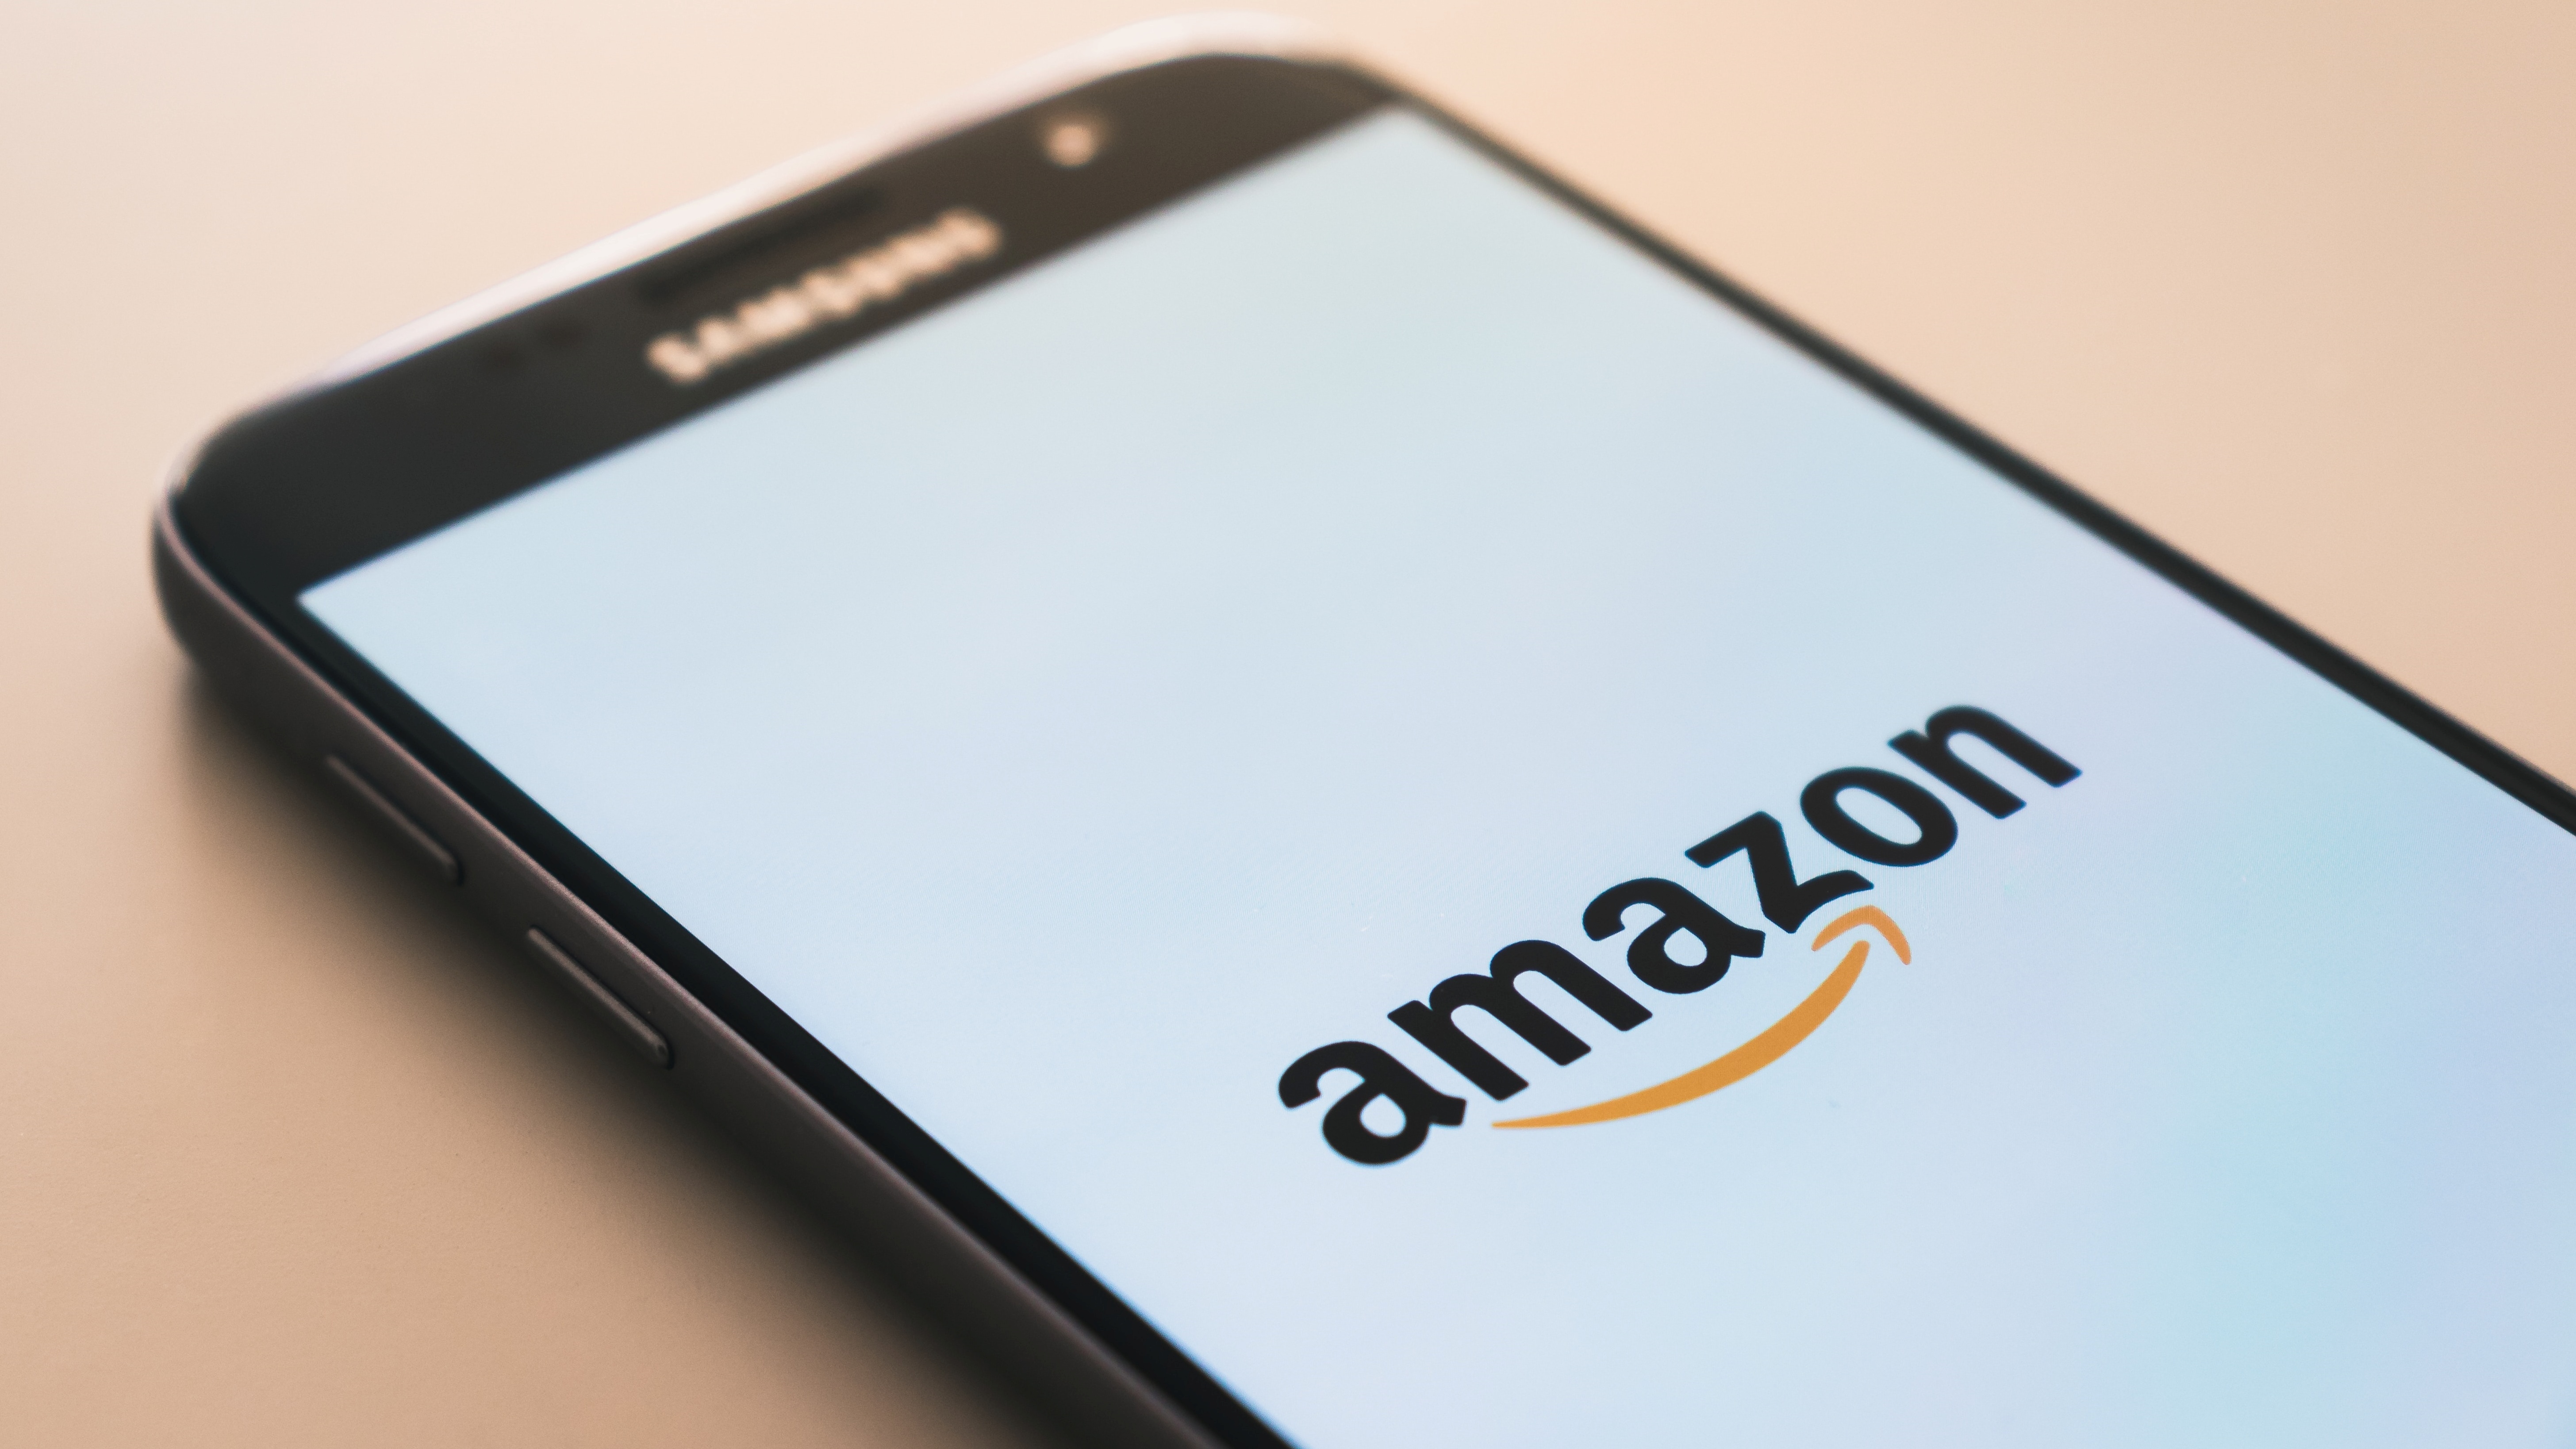 #Auf Amazon gibt es immer mehr irrelevante Anzeigen – und Jeff Bezos soll es angeordnet haben